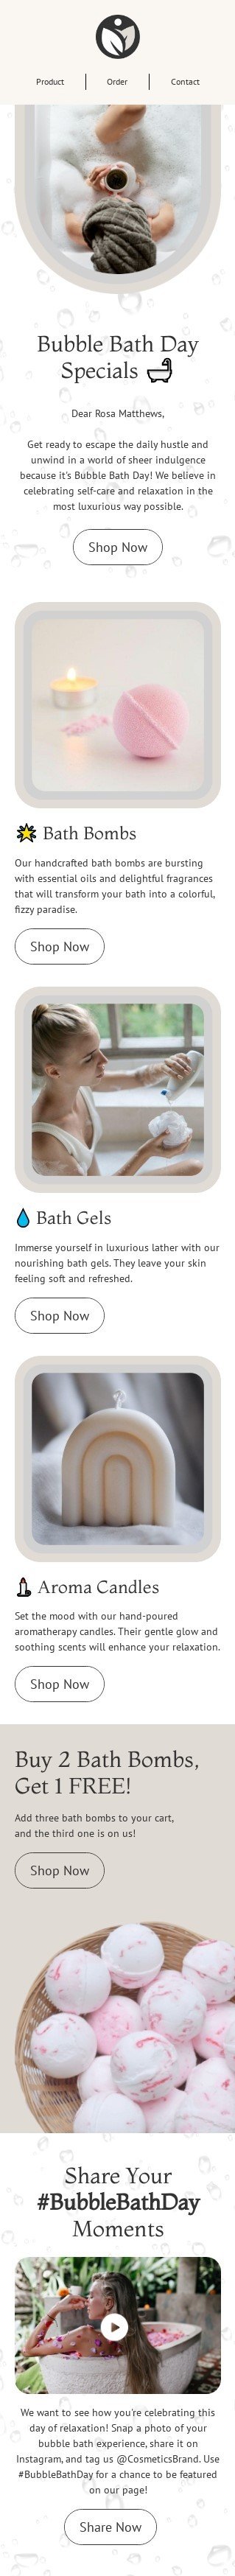 Plantilla de correo electrónico «Momentos del Día del Baño de Burbujas» de Día del Baño de Burbujas para la industria de belleza y cuidado personal Vista de móvil